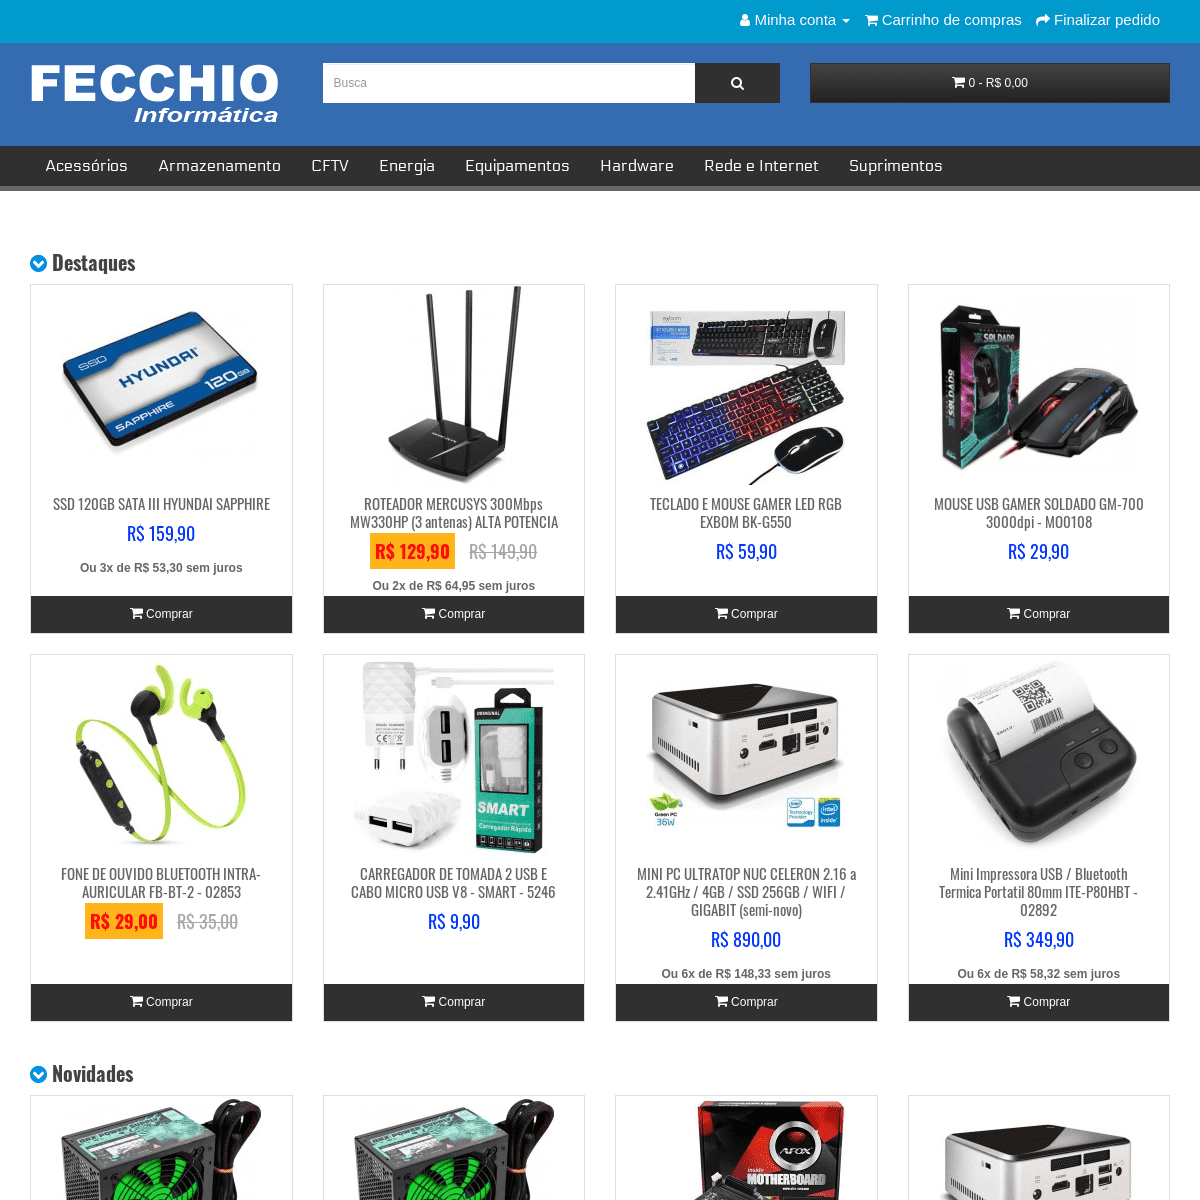 A complete backup of fecchio.com.br